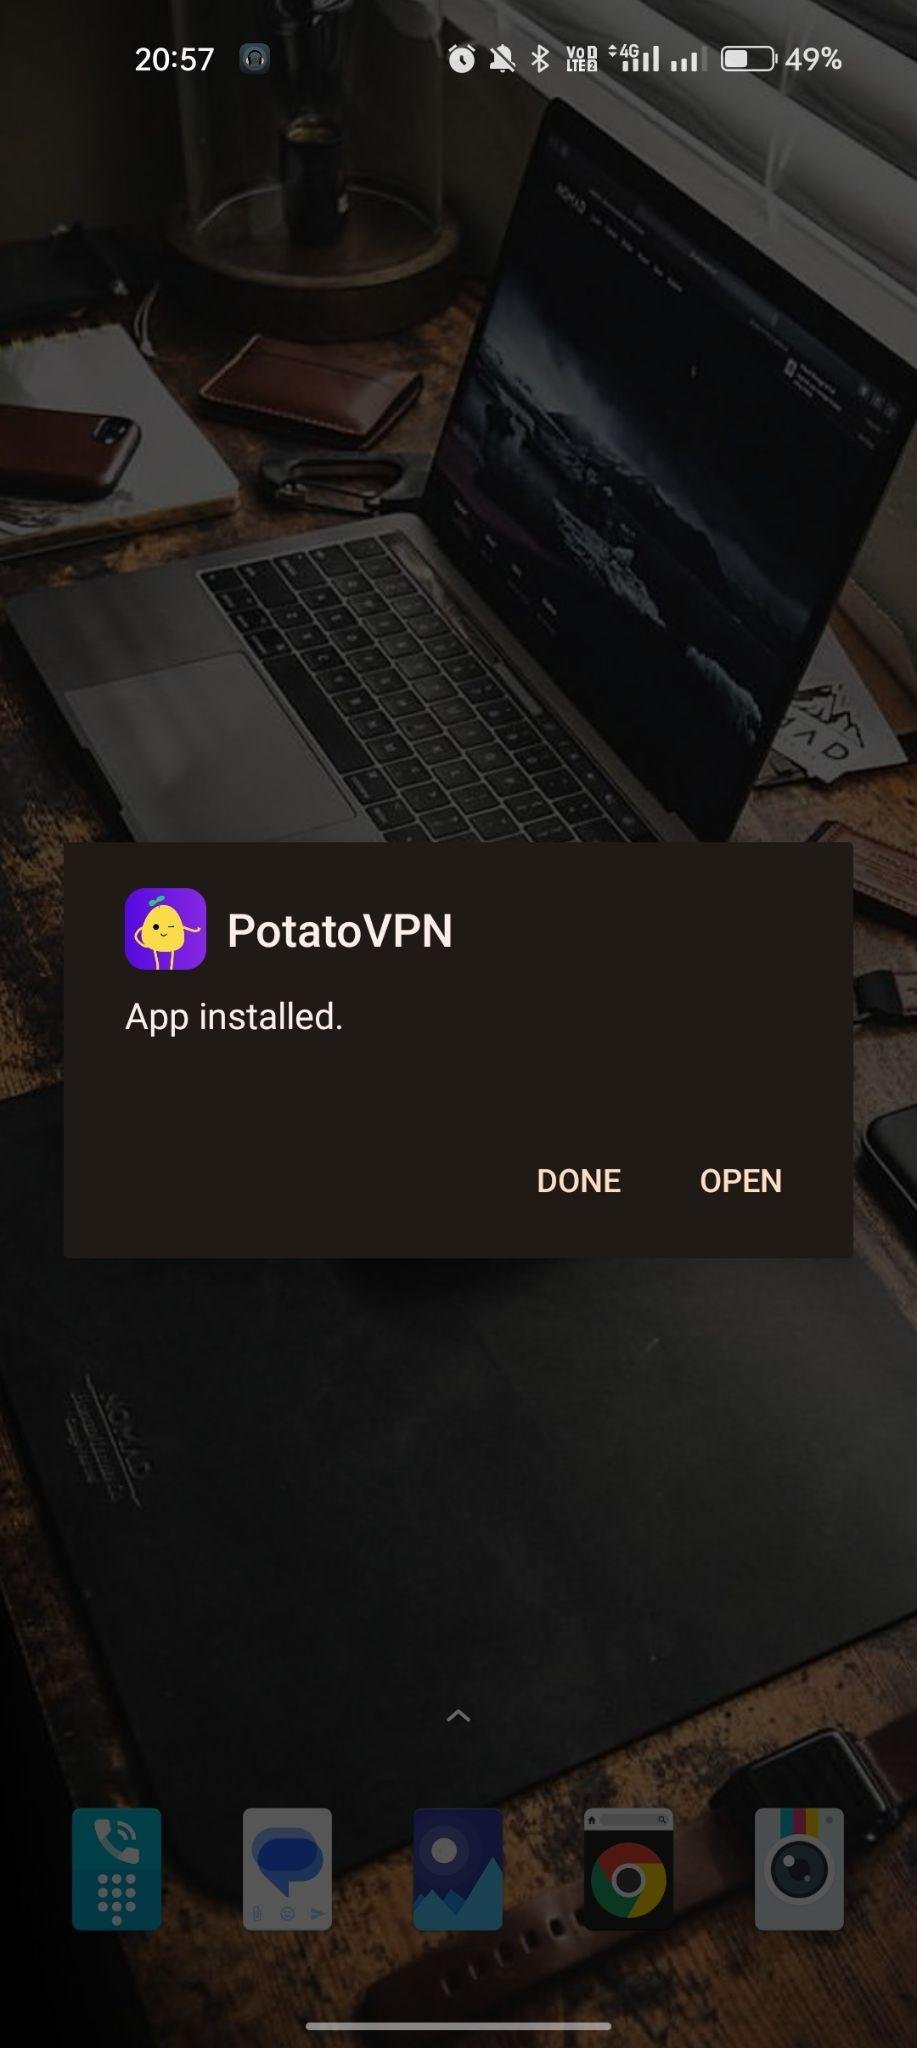 PotatoVPN apk installed